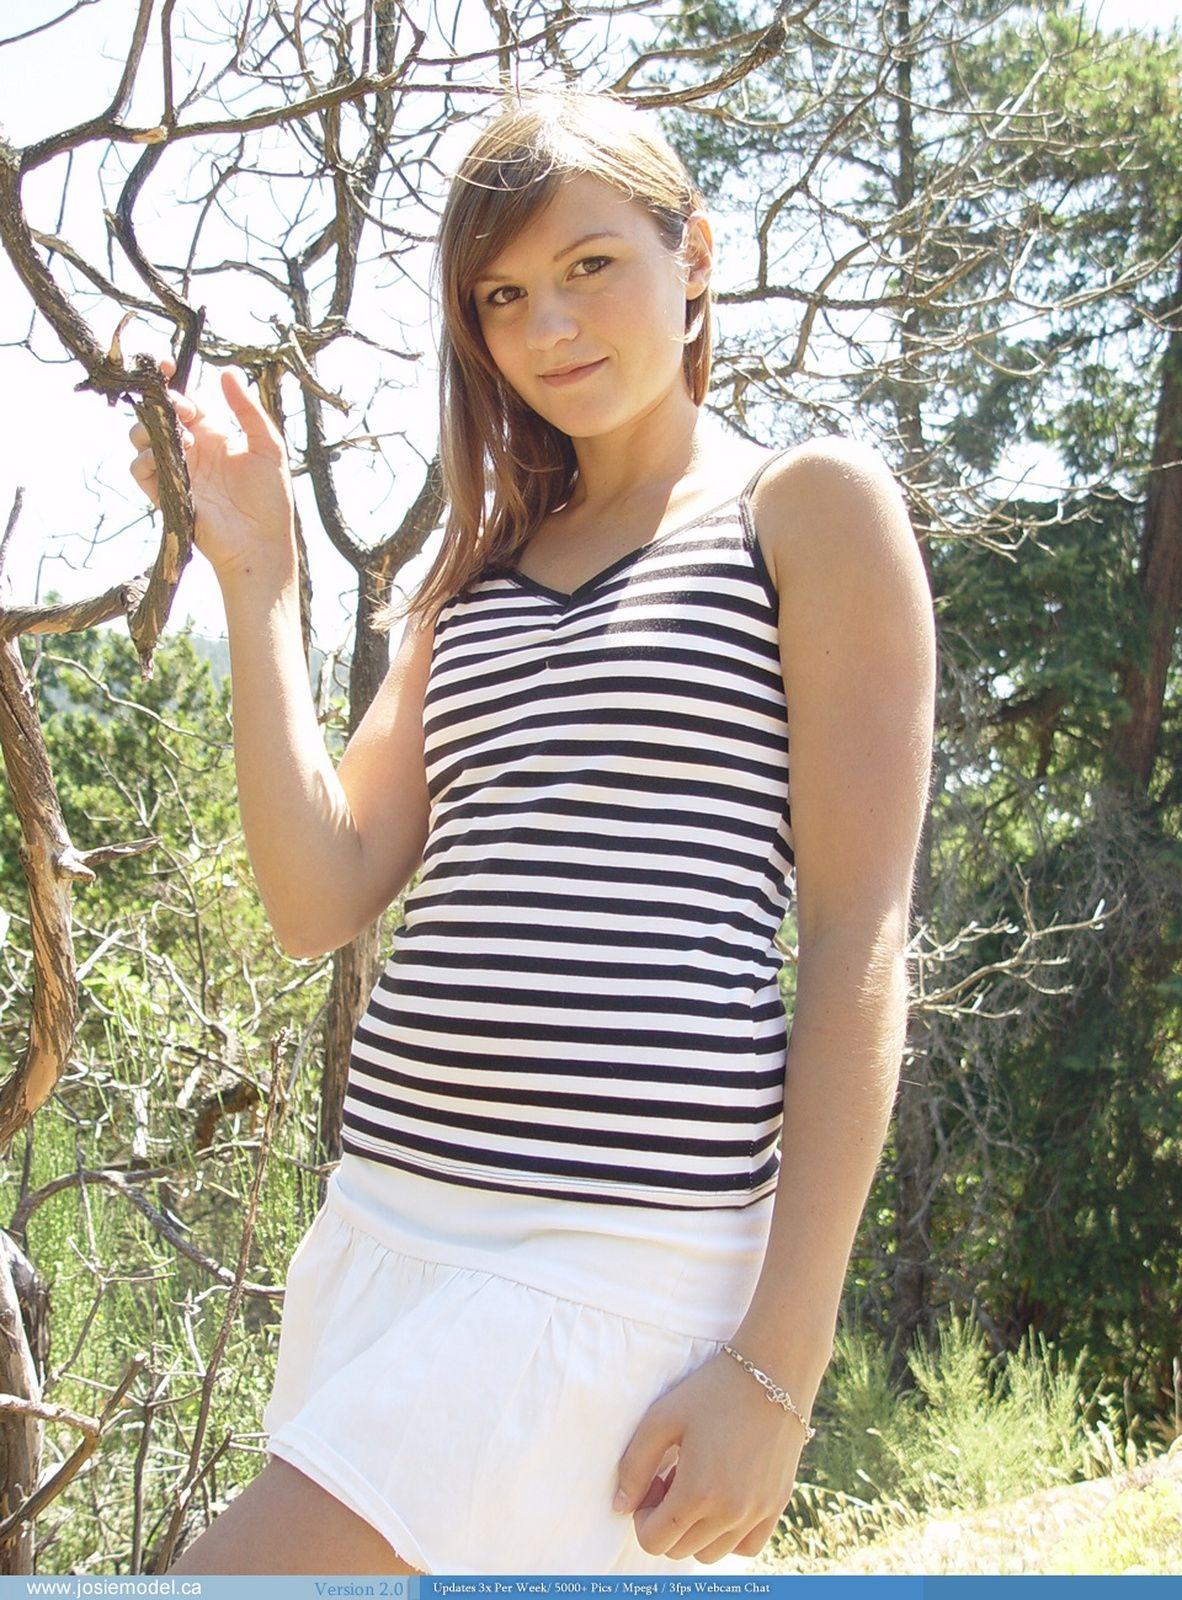 Immagini di giovane modello josie hottie mostrando il suo hotness fuori
 #55697072